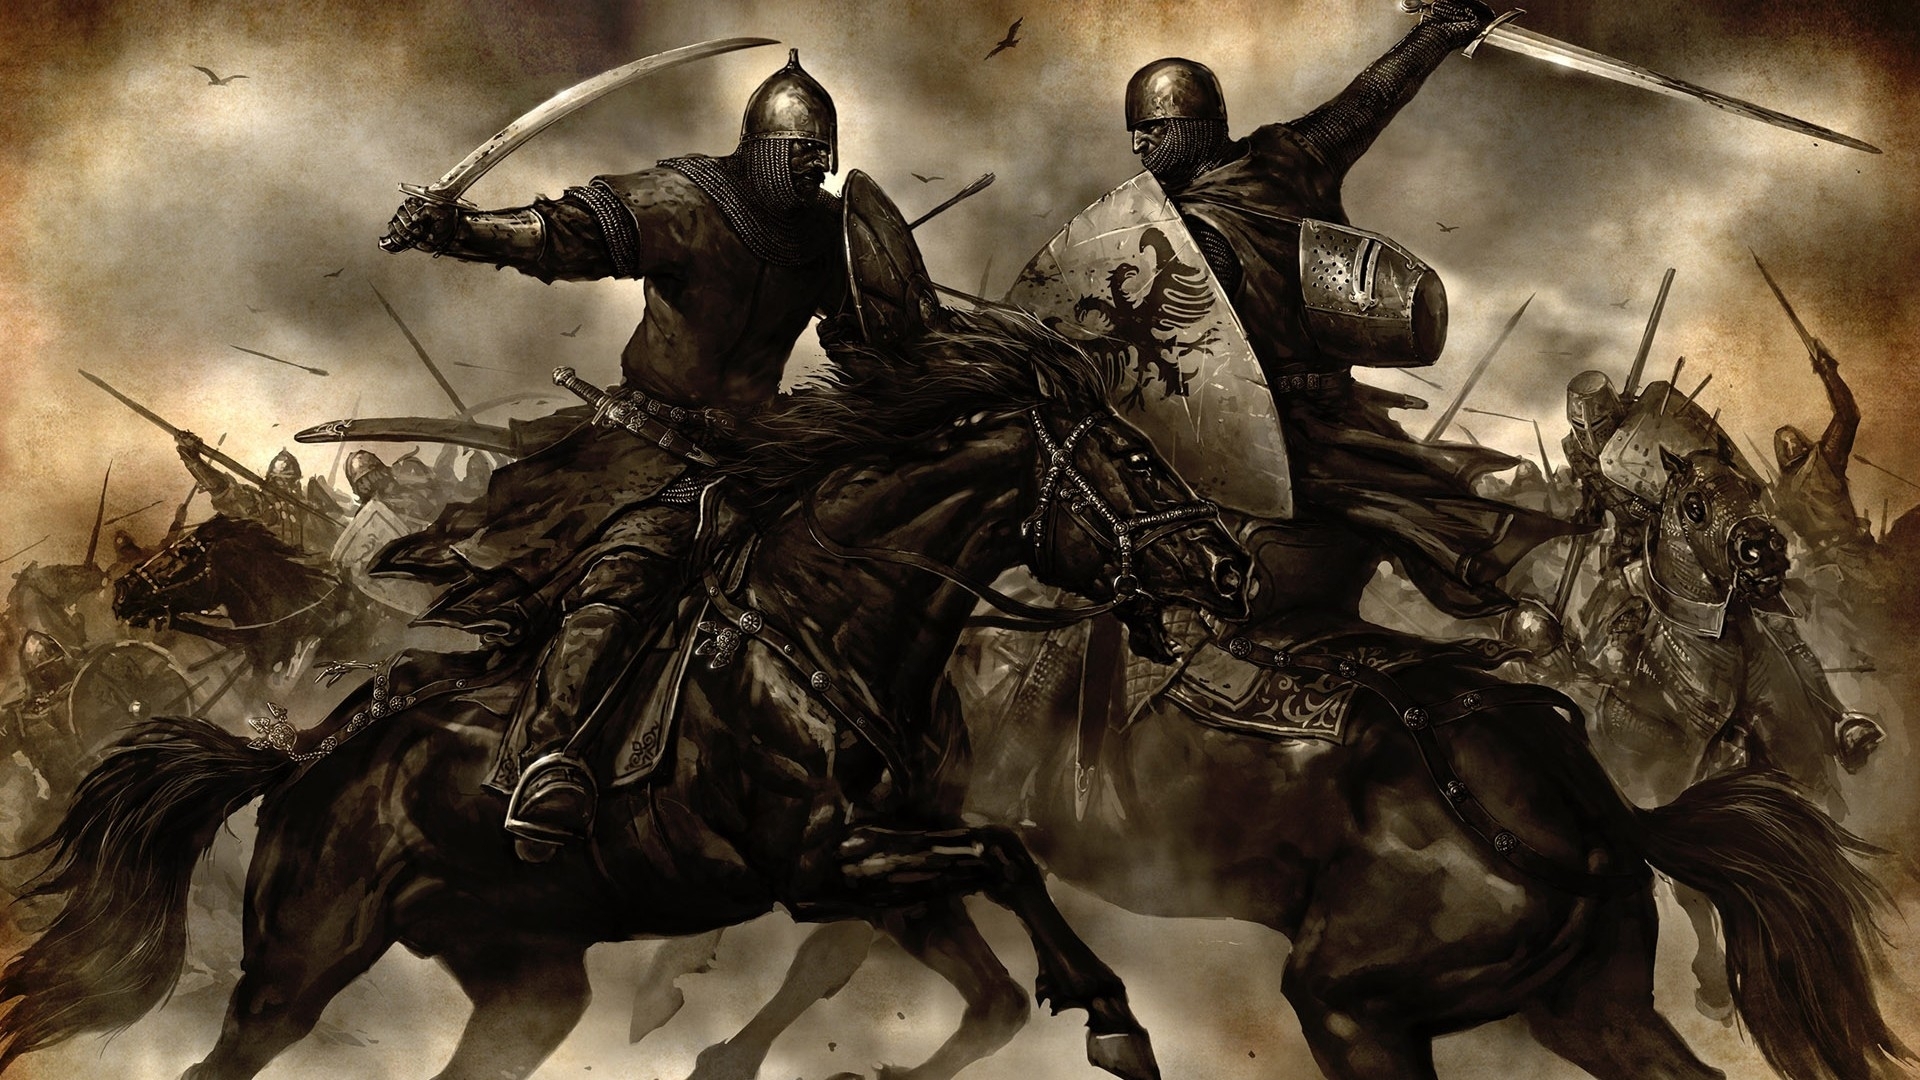 Cuộc Thập tự chinh là một loạt các cuộc chiến tranh tôn giáo diễn ra từ năm 1095 đến năm 1291